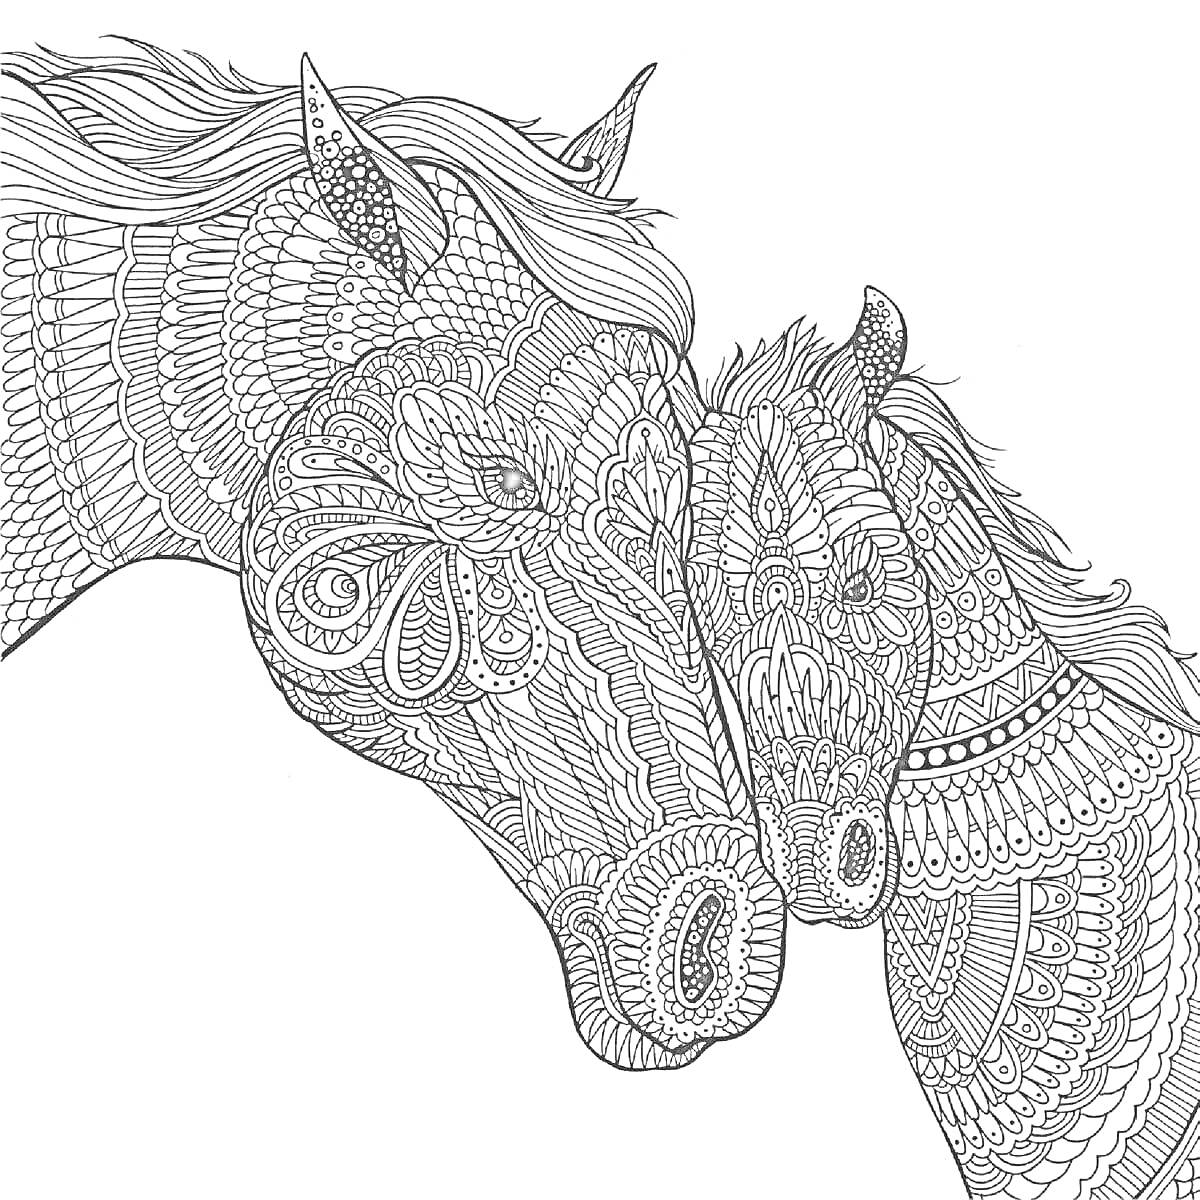 Раскраска Лошади с узорами - две обезрамочные головы лошадей, украшенные сложными орнаментами